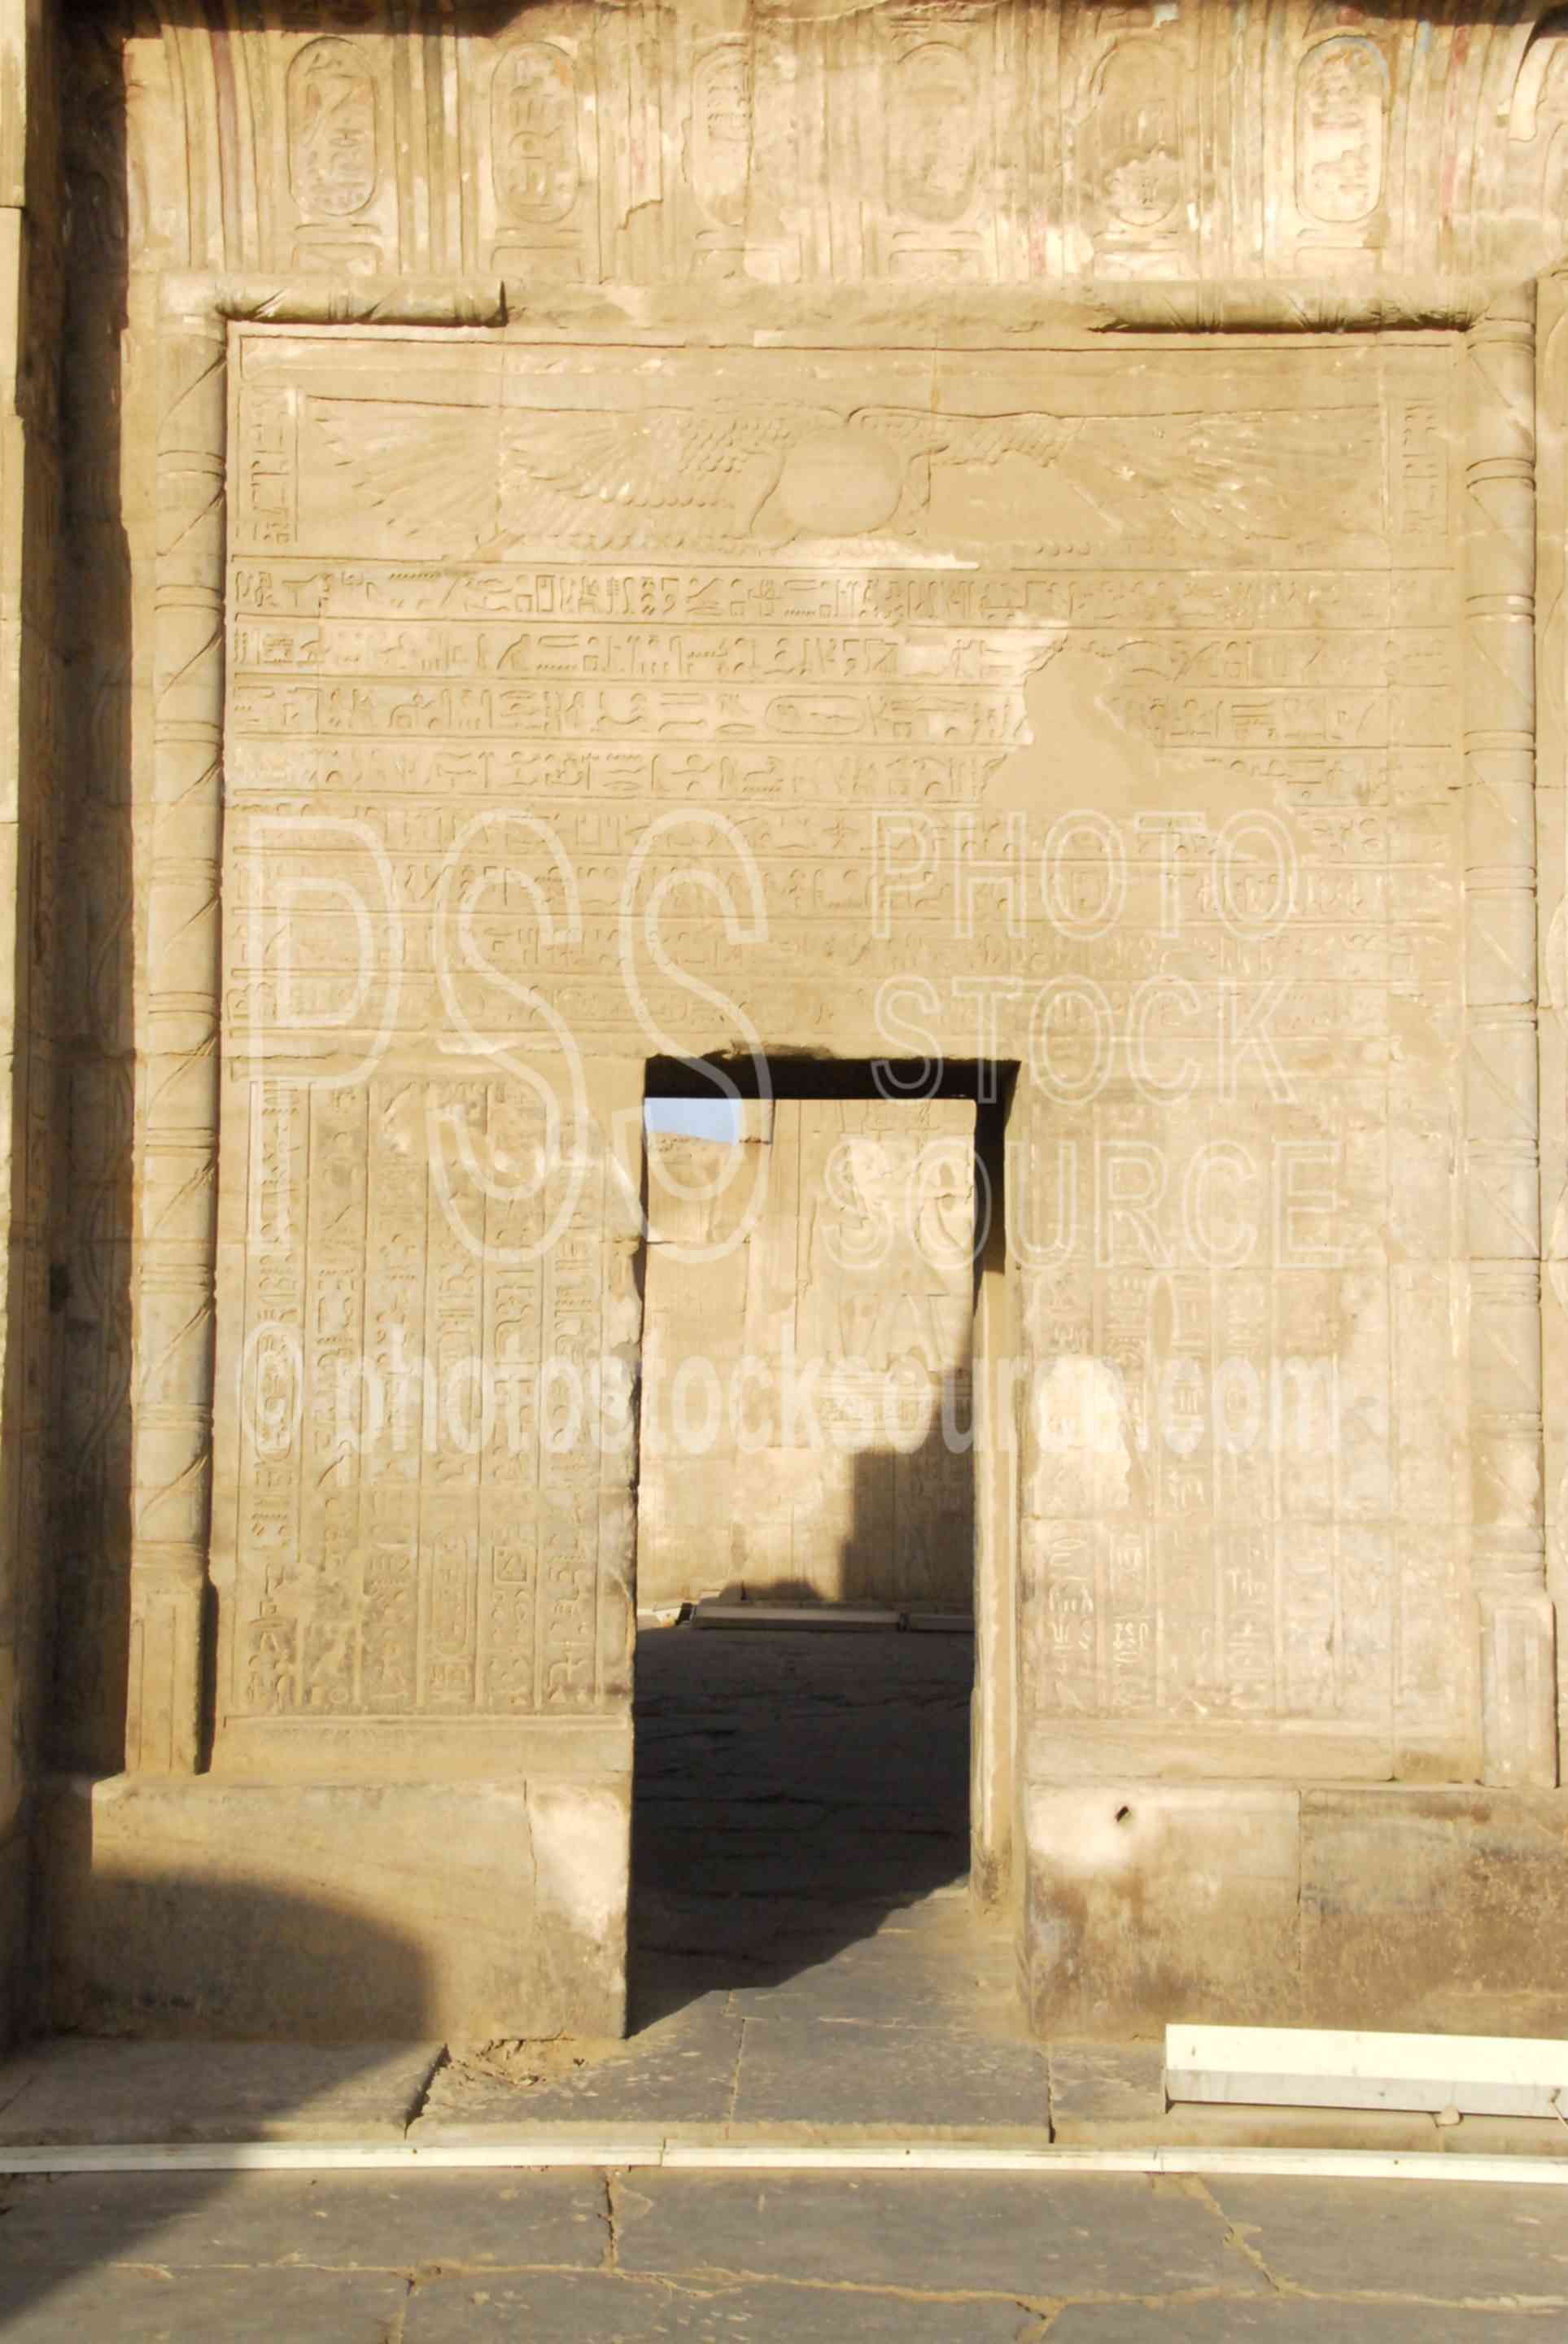 Kom Ombo Temple Door,ptolemy,horus,haroeris,sobek,horus the elder,hieroglyphics,door,architecture